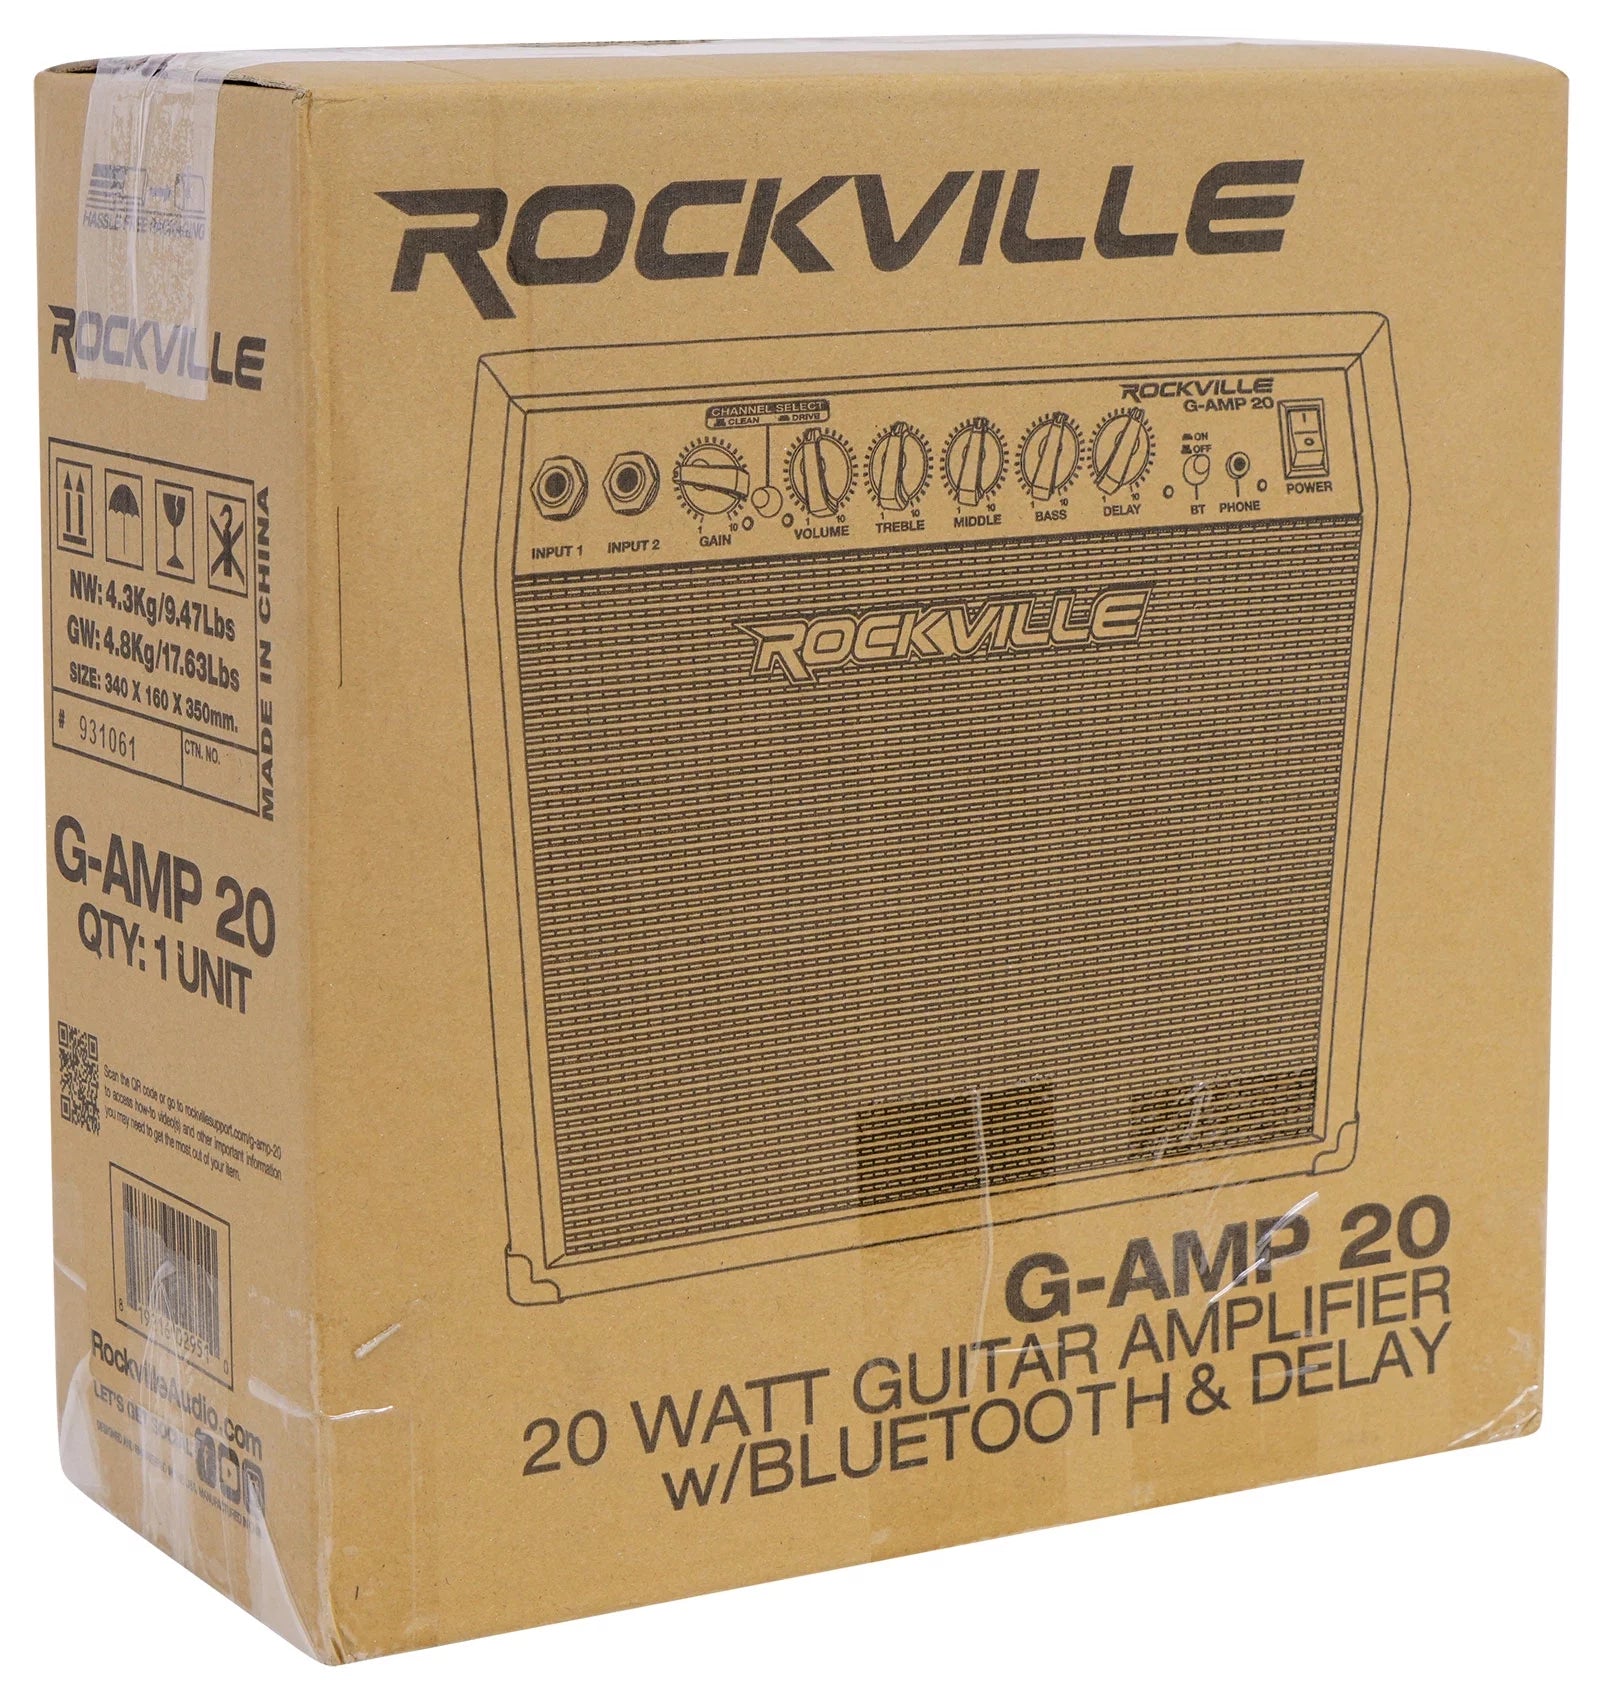 G-AMP 20 Watt Guitar Amplifier Dual Input Combo Amp Bluetooth/Delay